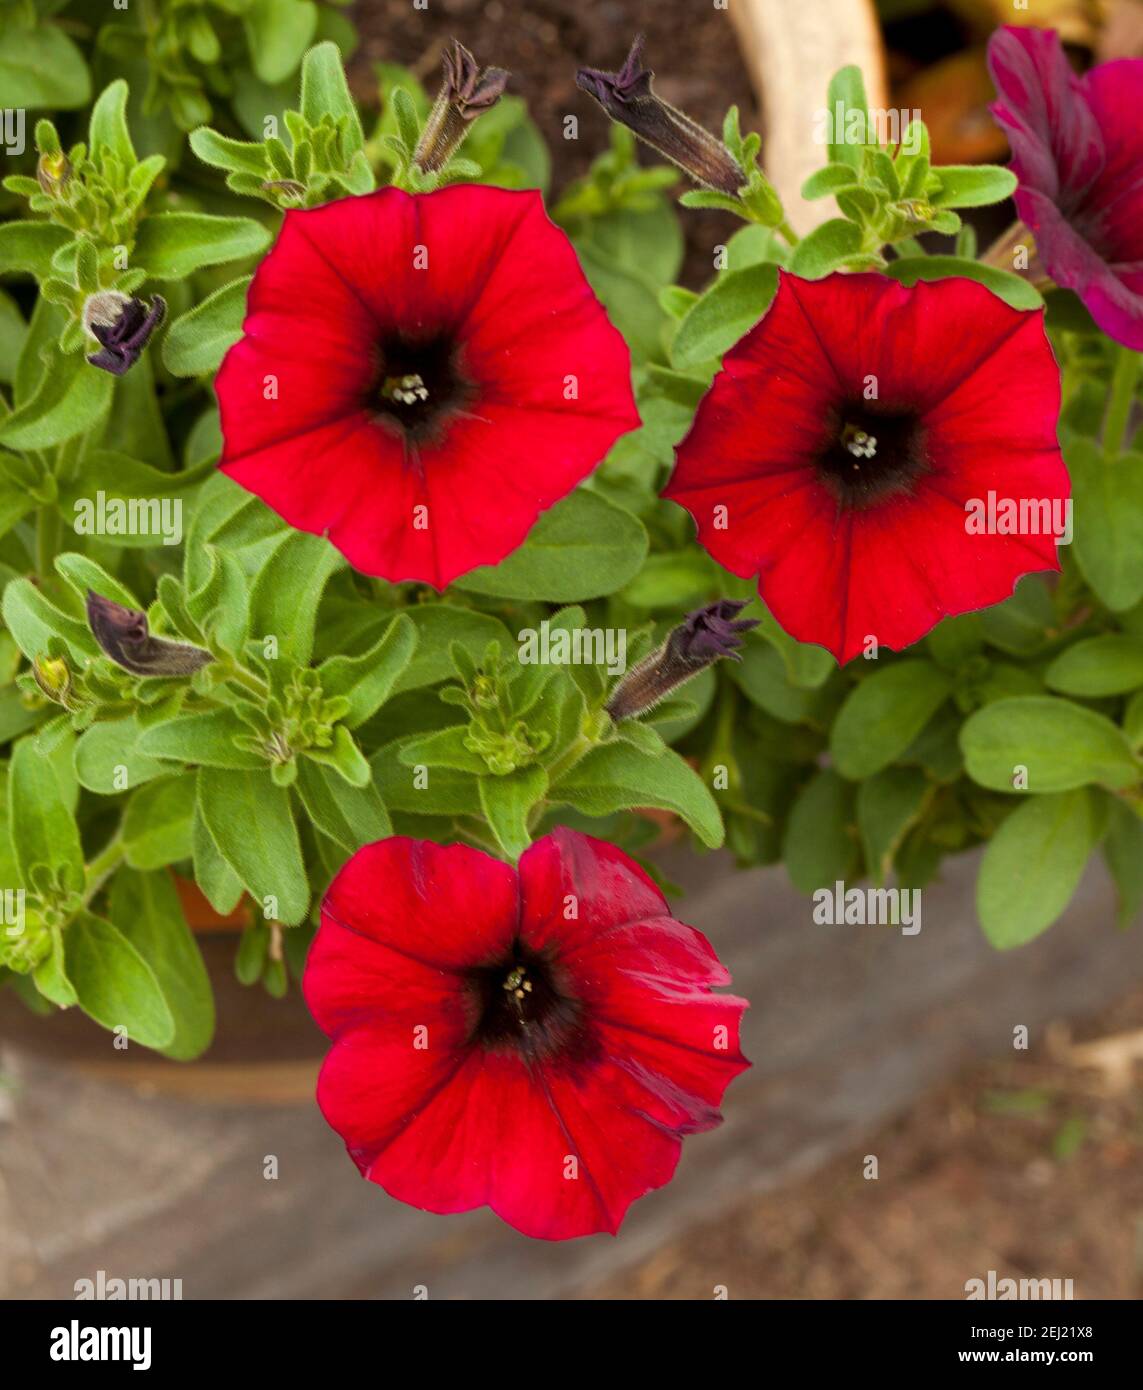 Splendidi e vivaci fiori rossi di Petchoa, moderno ibrido di Calibrachoa e Petunia, in un giardino australiano Foto Stock